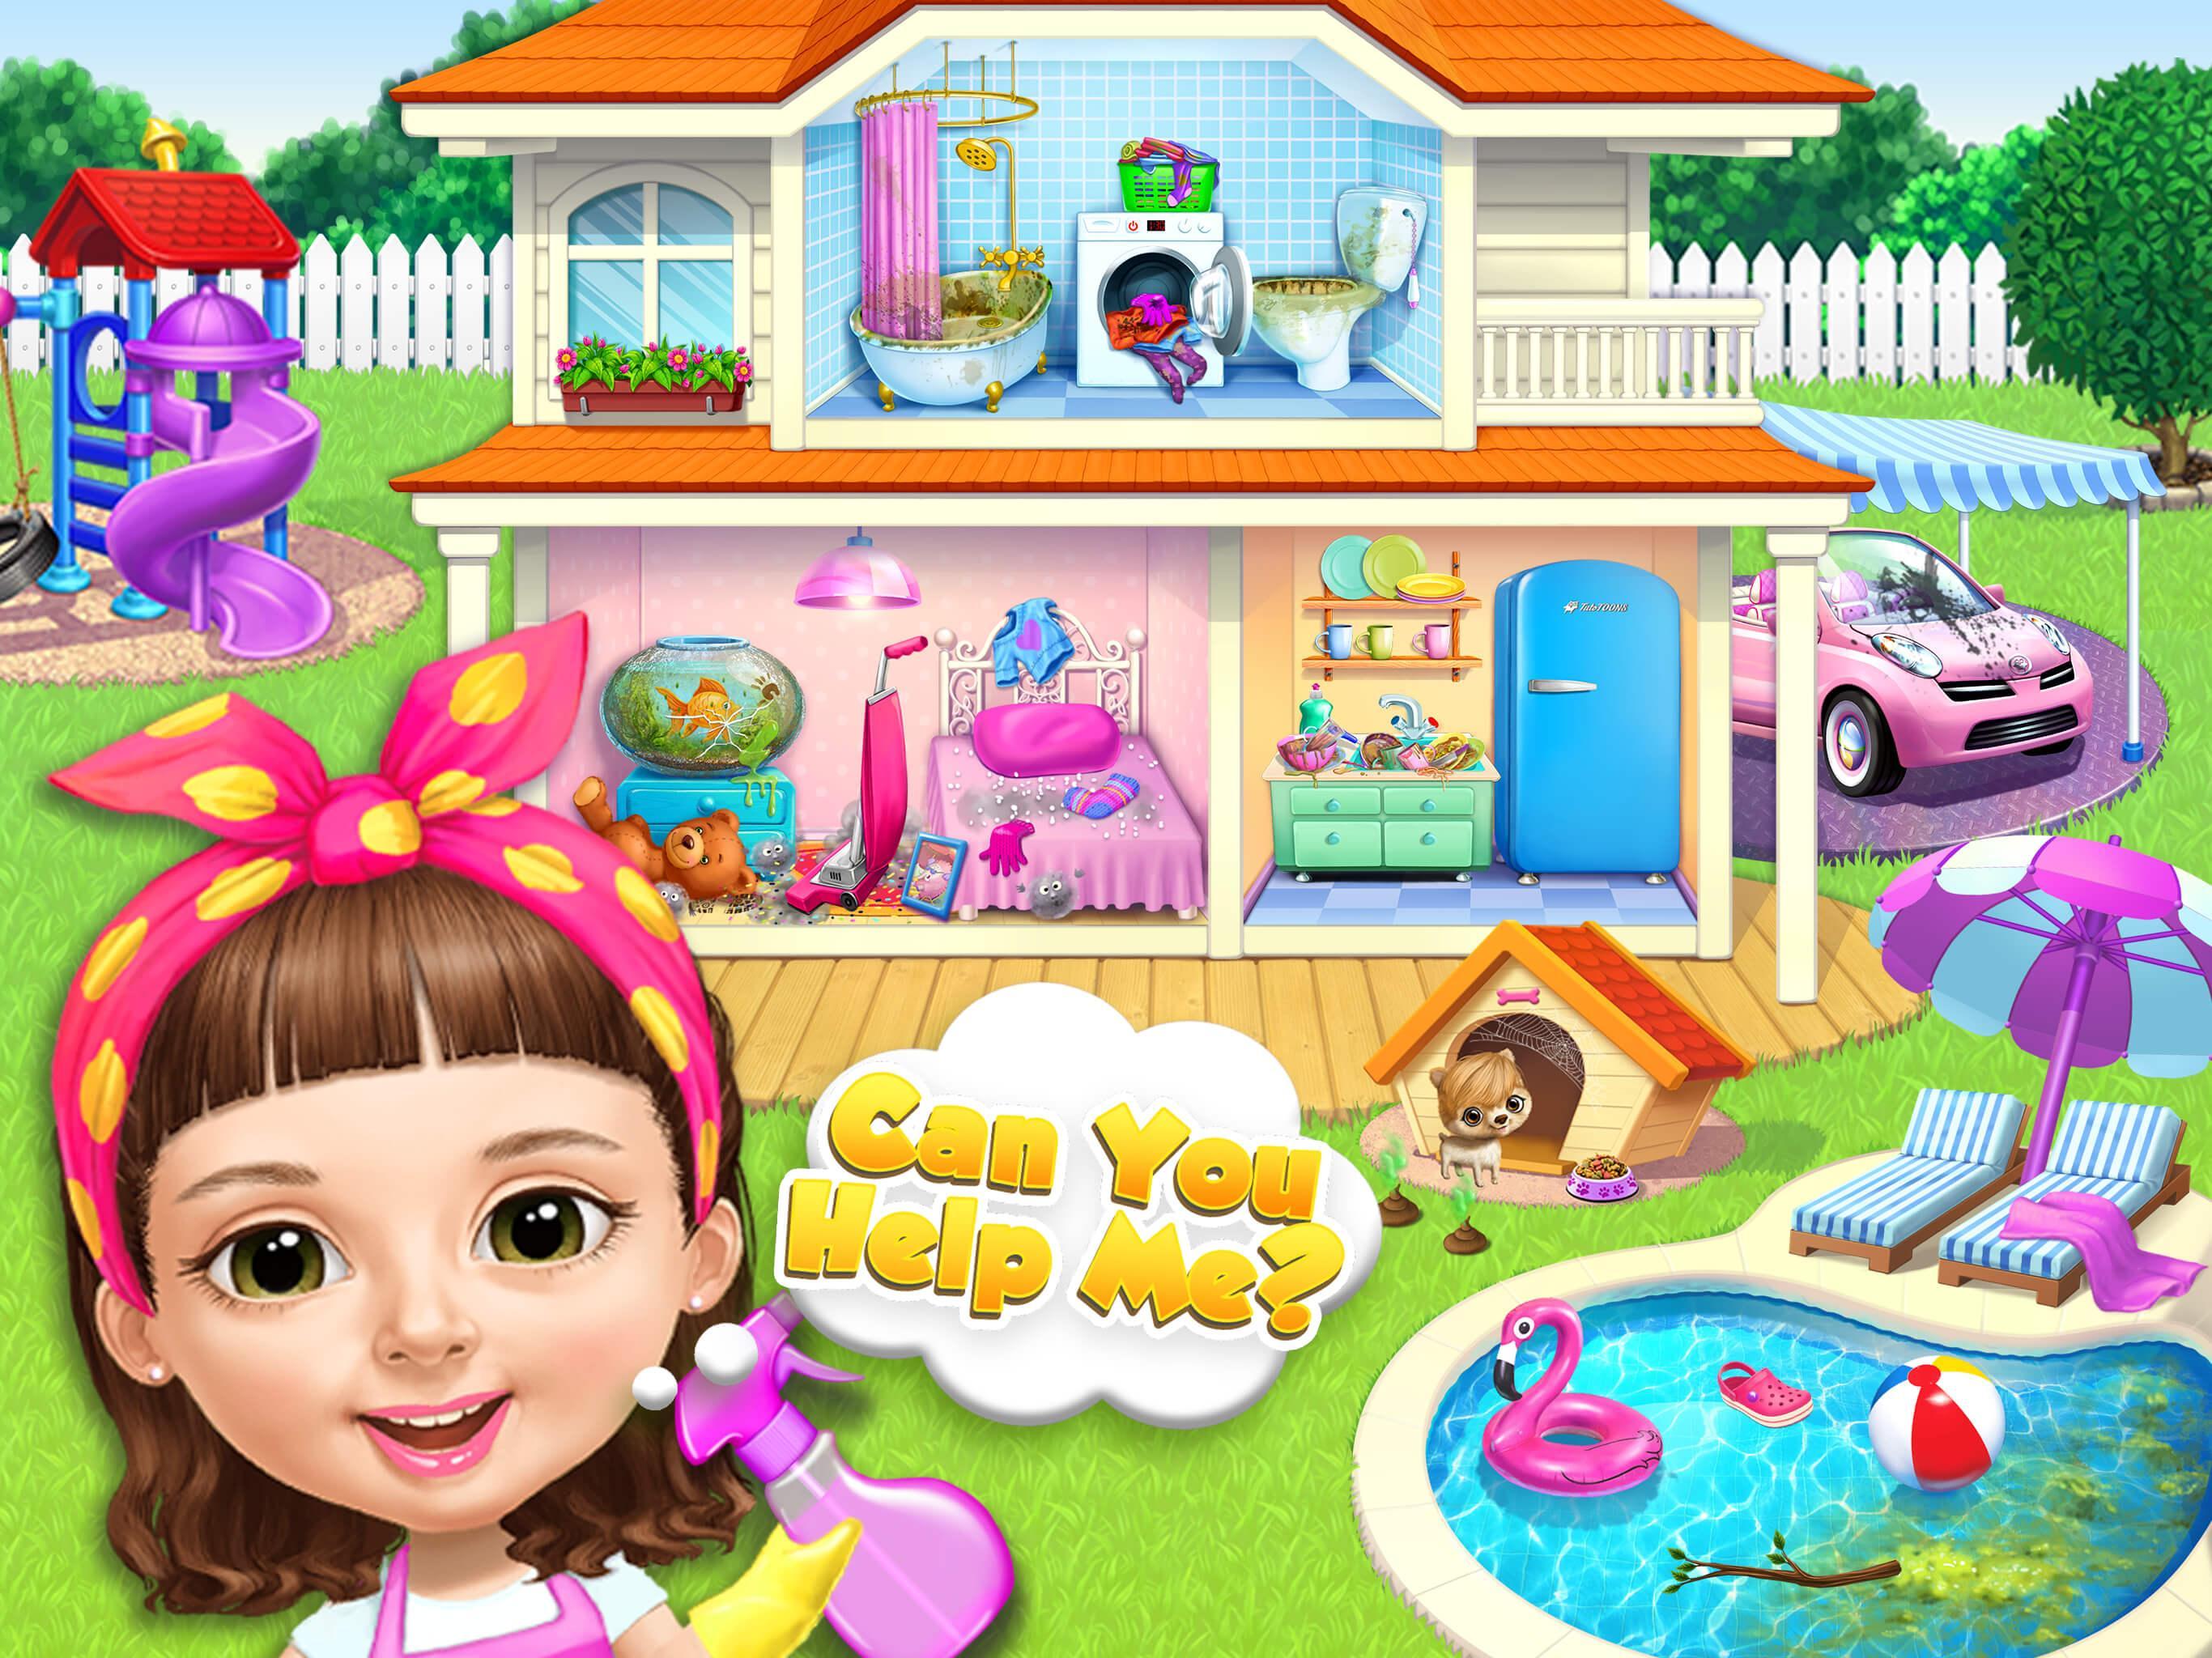 Image 4 : Capture du jeu où l'on voit une maison sale et saccagée à tous les étages et un personnage au premier plan qui pense Can You Help Me?